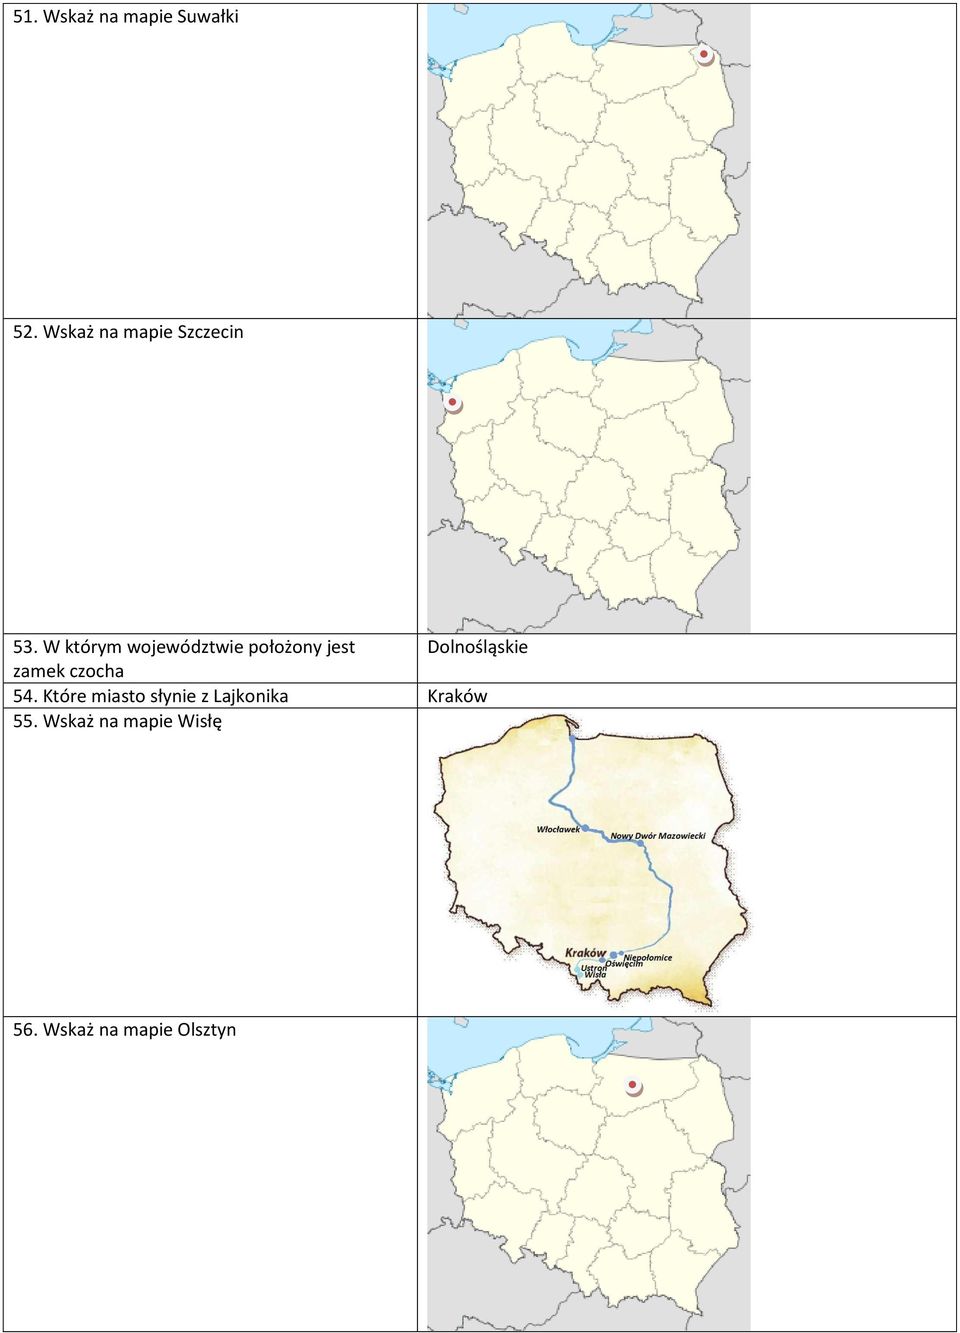 W którym województwie położony jest Dolnośląskie